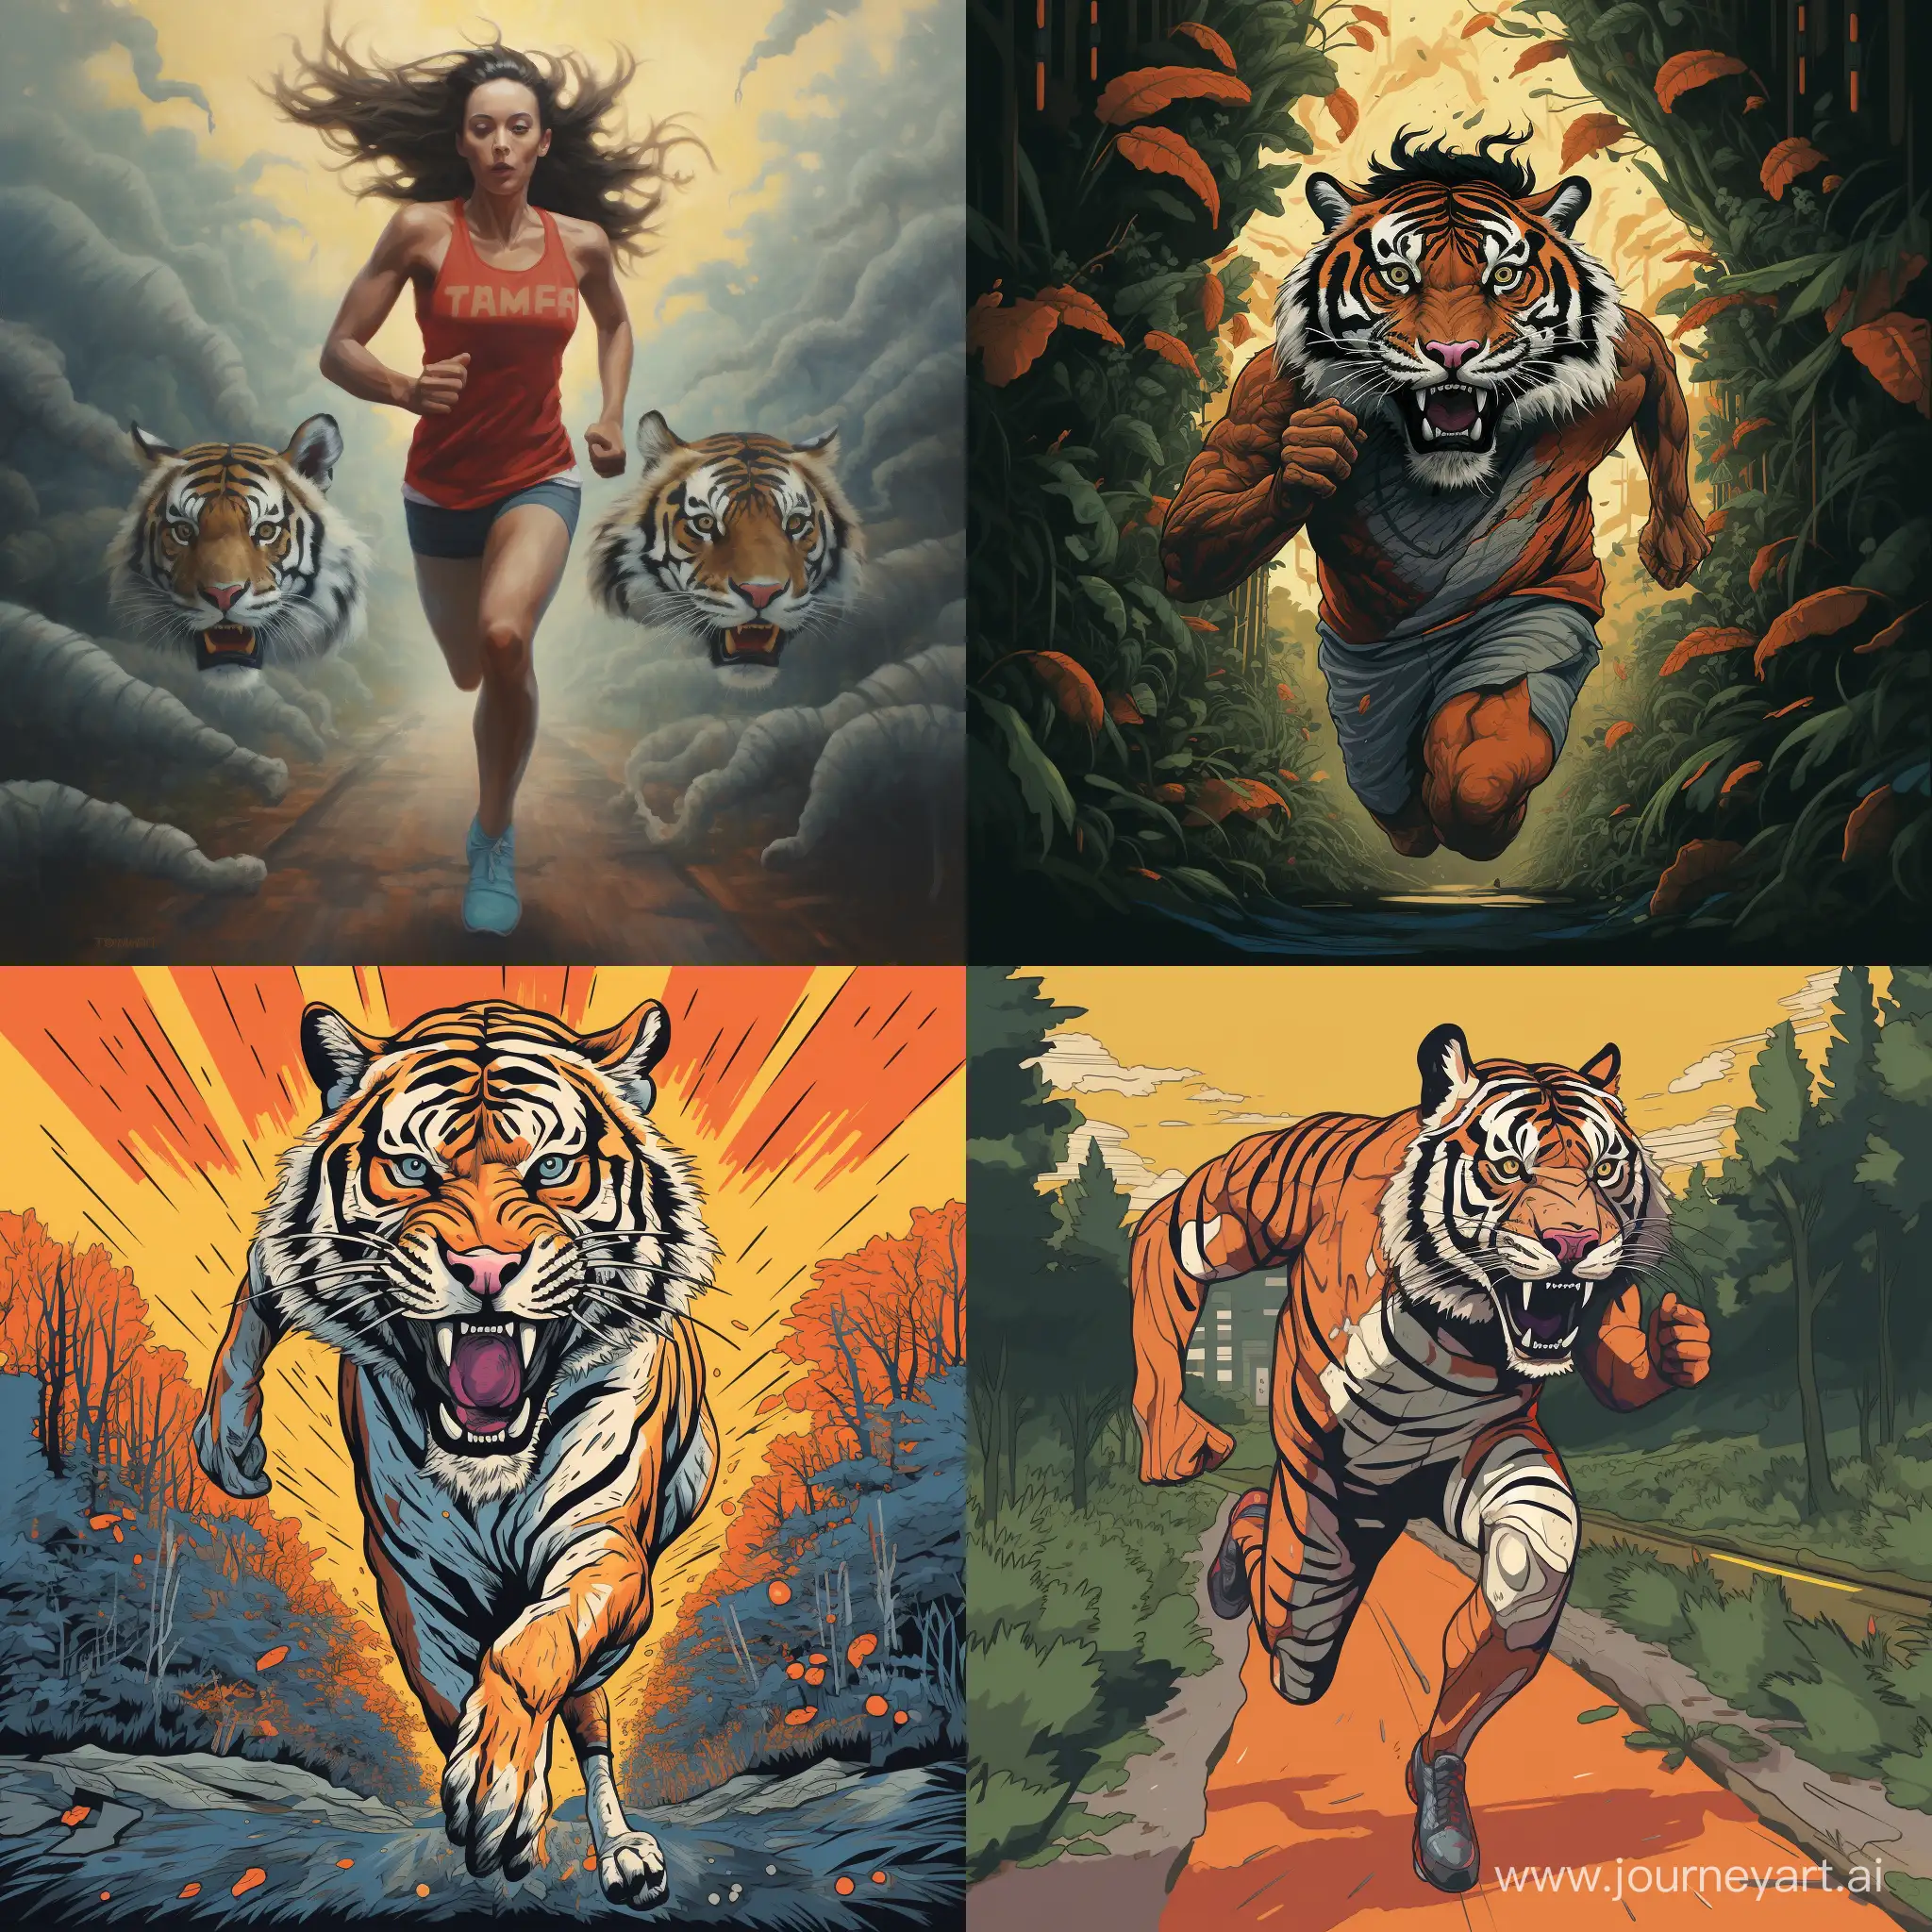 Energetic-Tiger-Marathoner-in-a-11-Aspect-Ratio